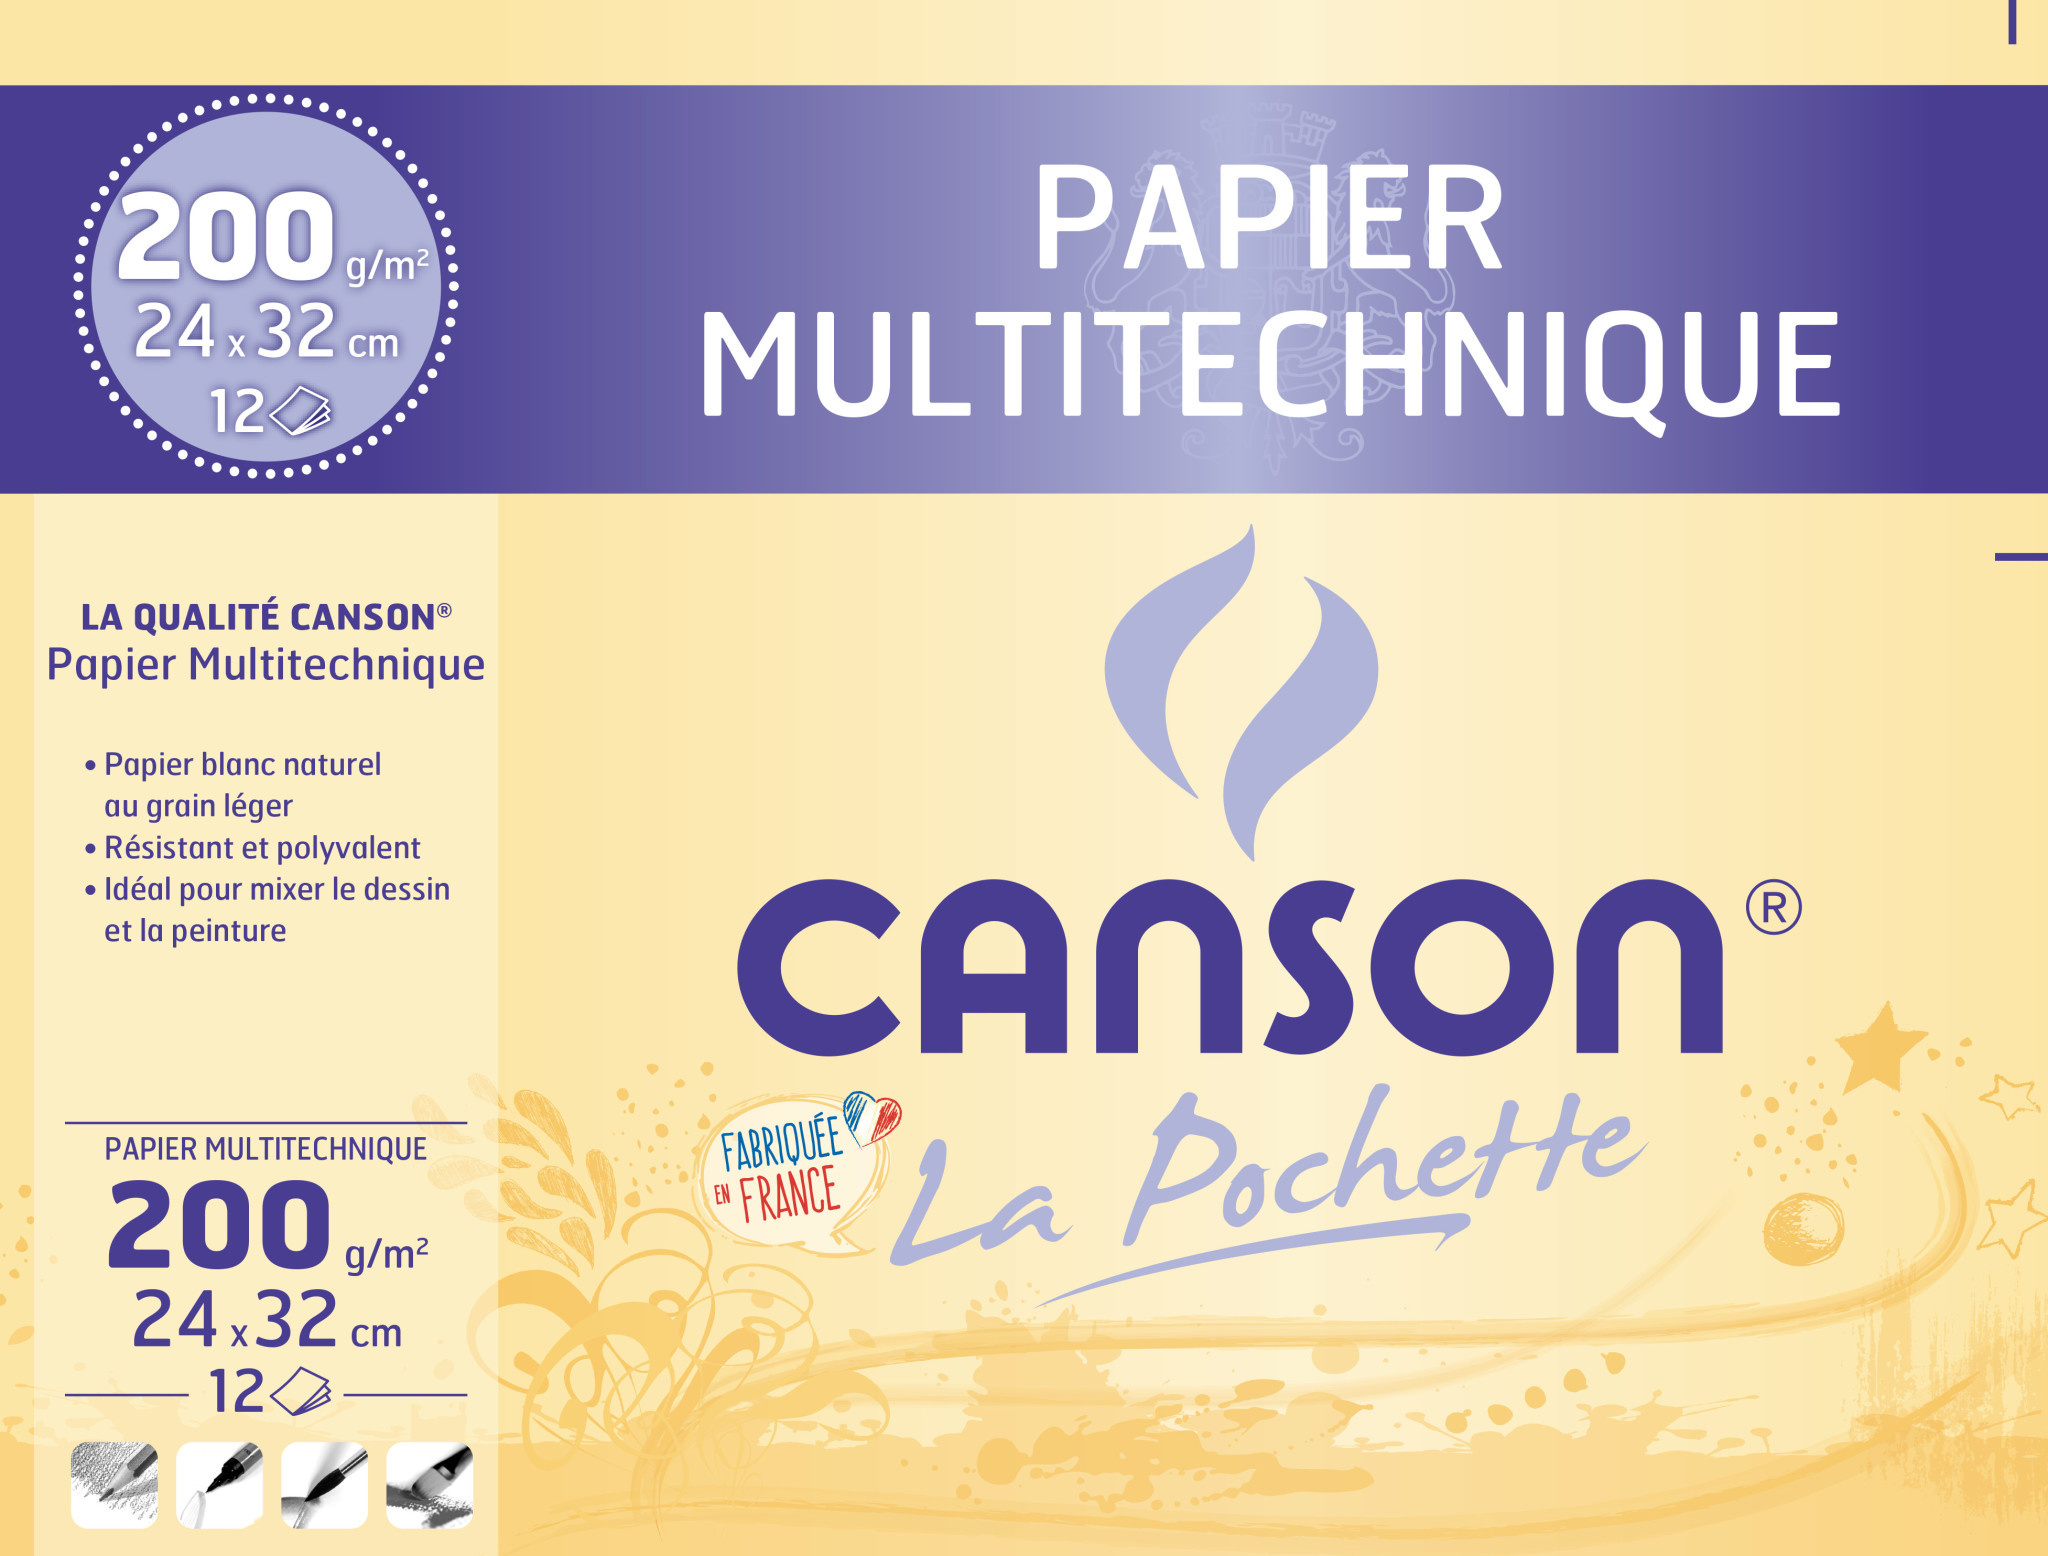 Canson - Beaux arts - Pochette de papier à dessin blanc - 10